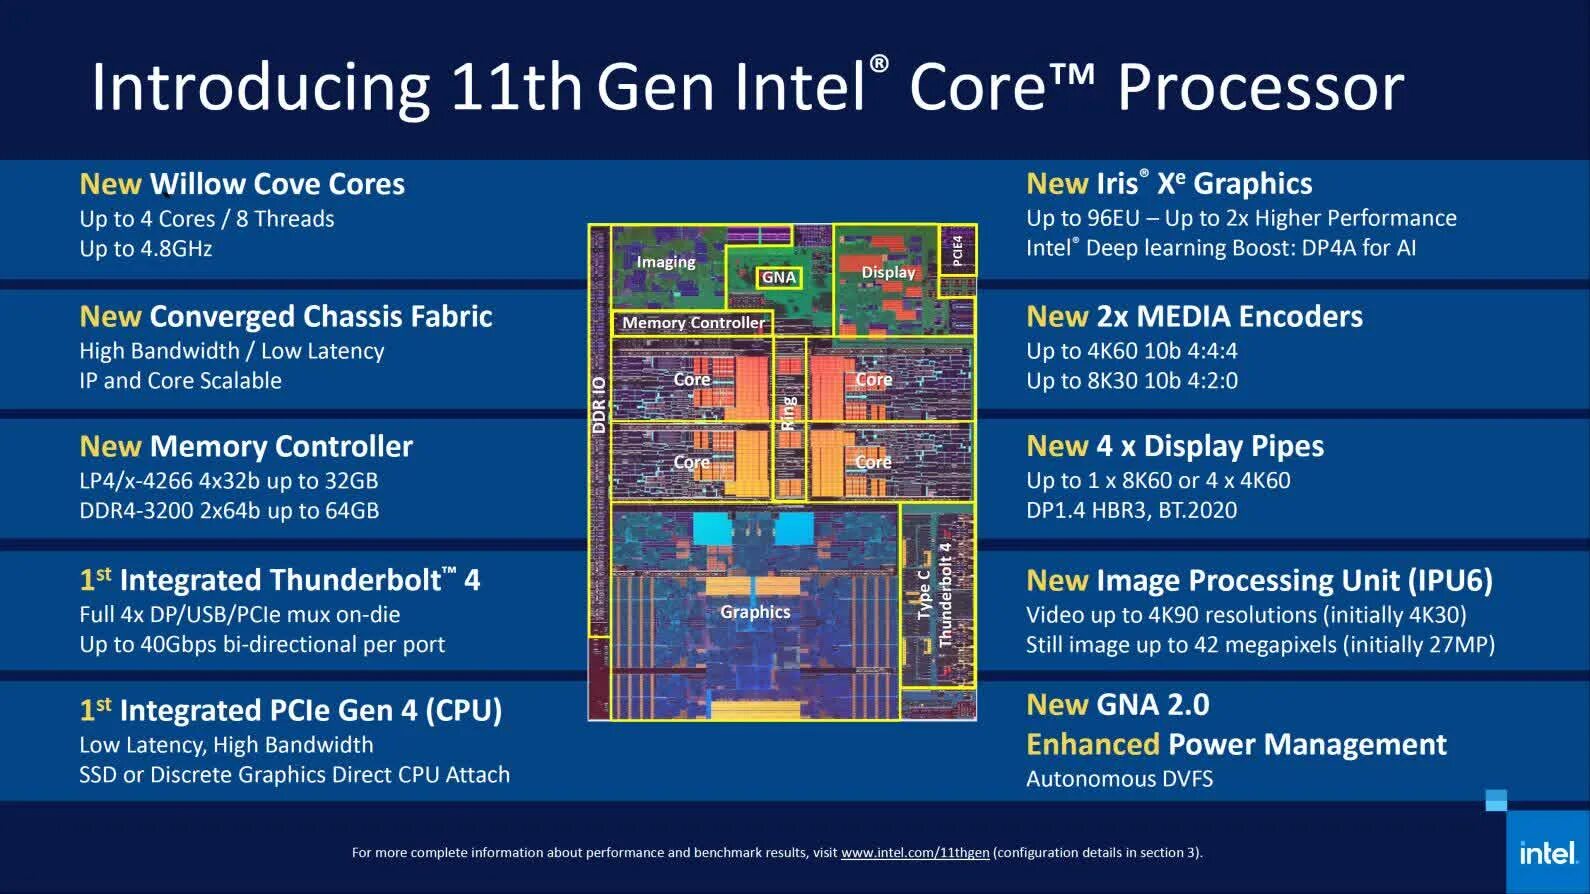 Intel core 11 поколения. Архитектура процессора Intel Core i7 9 поколения. Intel Core i7 11 Gen Core Architecture. 11 Поколение процессоров Intel Tiger Lake. Архитектура процессора Intel Core i7-8565u.